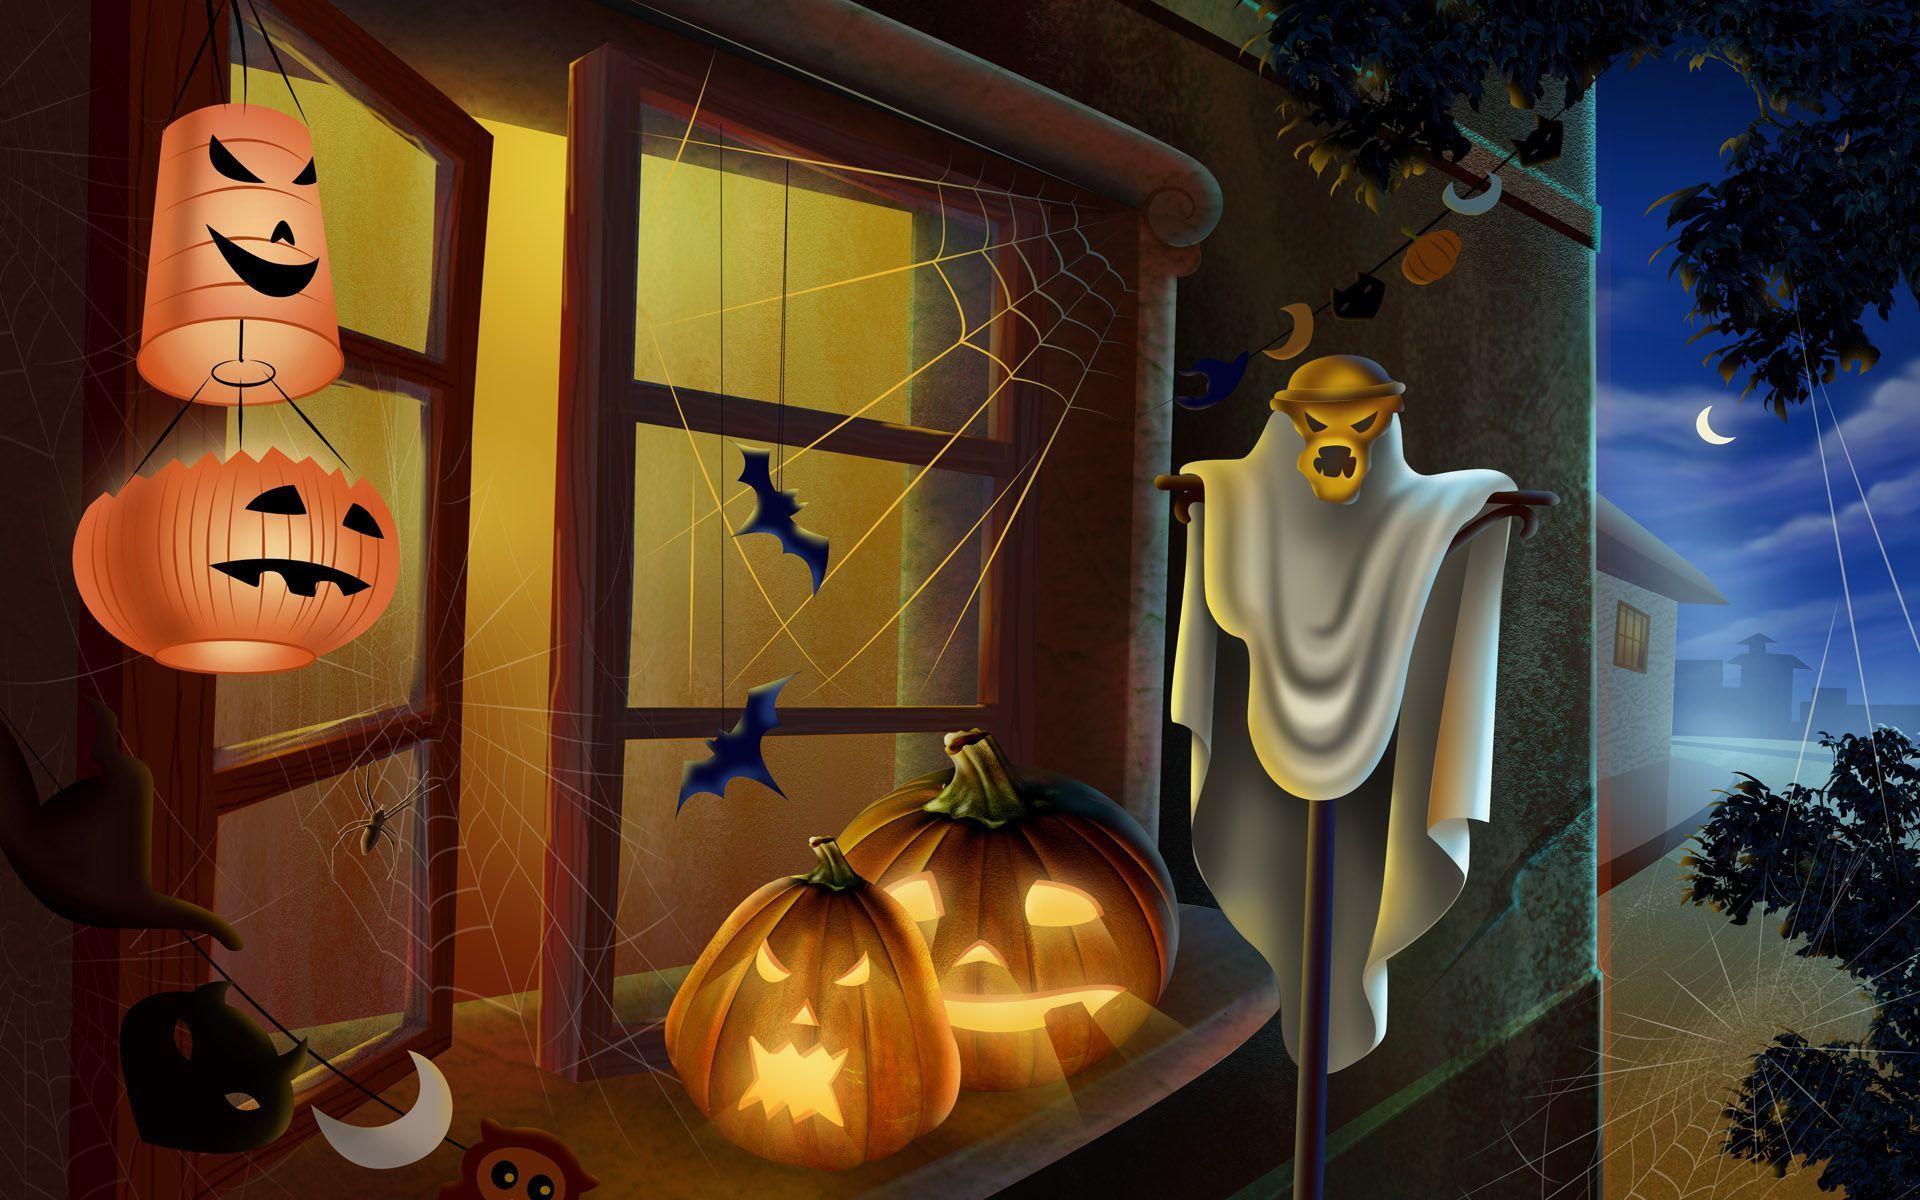 Hãy bắt đầu chuẩn bị cho Ngày Halloween bằng cách vẽ tranh thật đáng sợ và huyền bí theo đúng chủ đề. Cùng Nhà Văn Hóa Thiếu Nhi đón xem những hình ảnh vẽ tranh cực kỳ độc đáo và thú vị nhé!